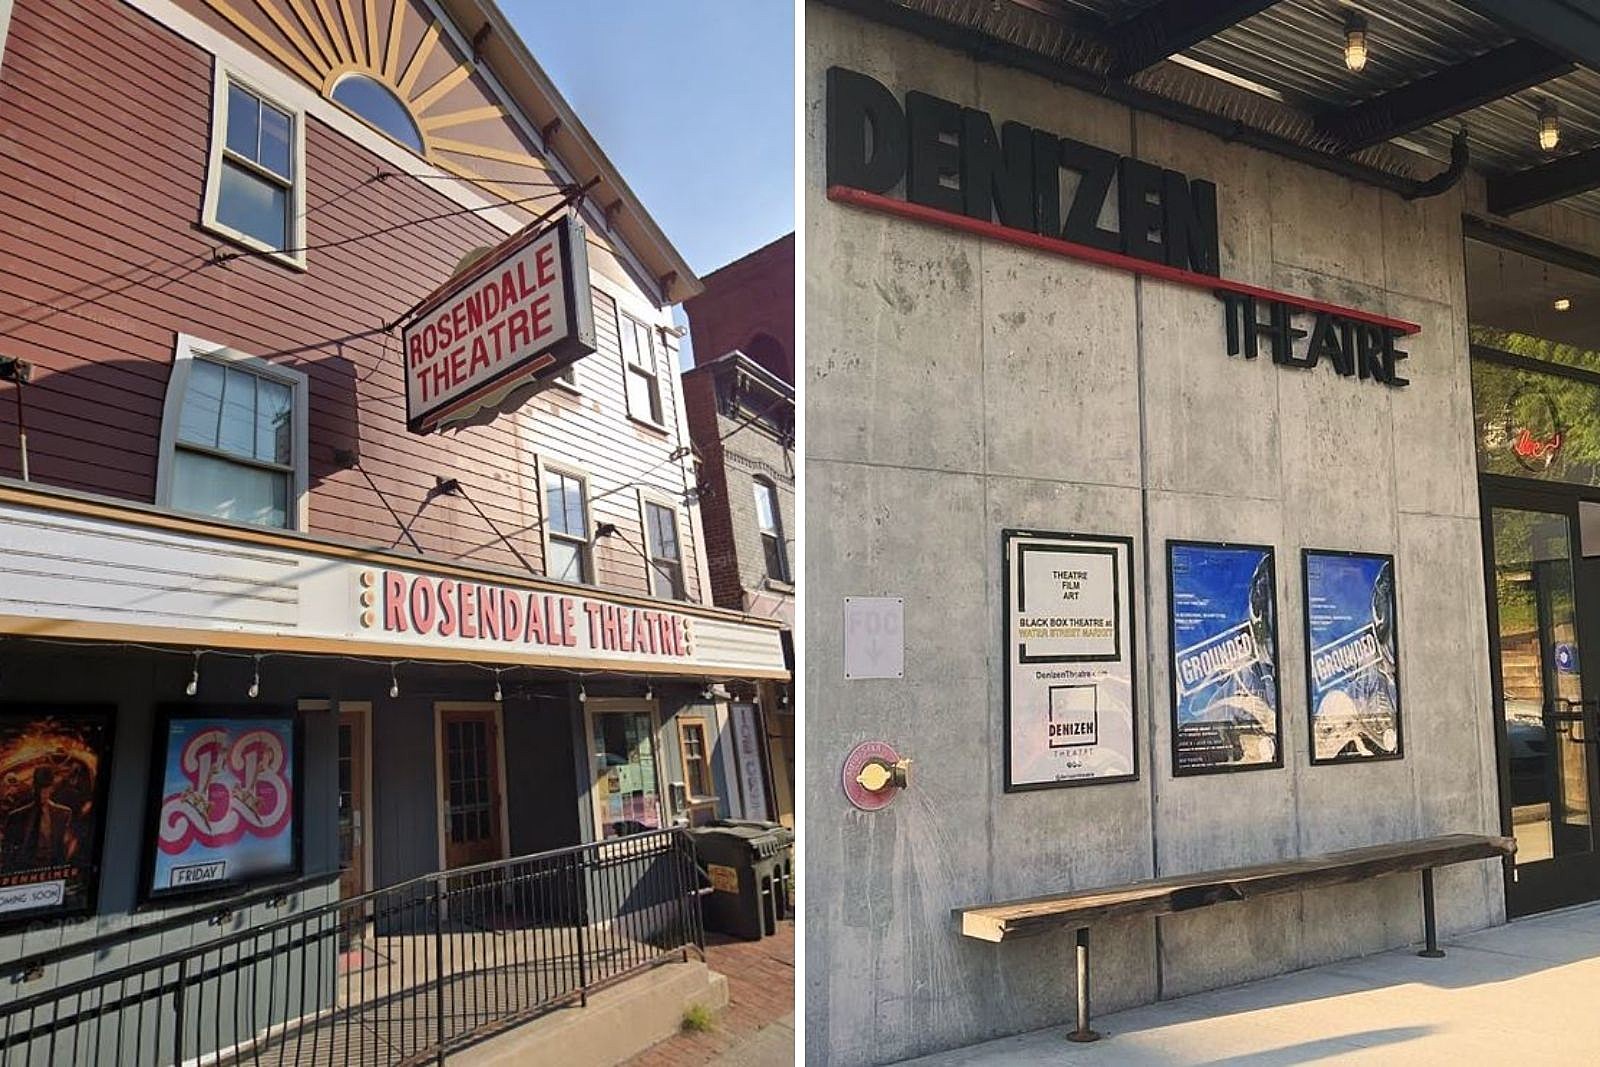 Community Theatre in Catskill, NY - Cinema Treasures